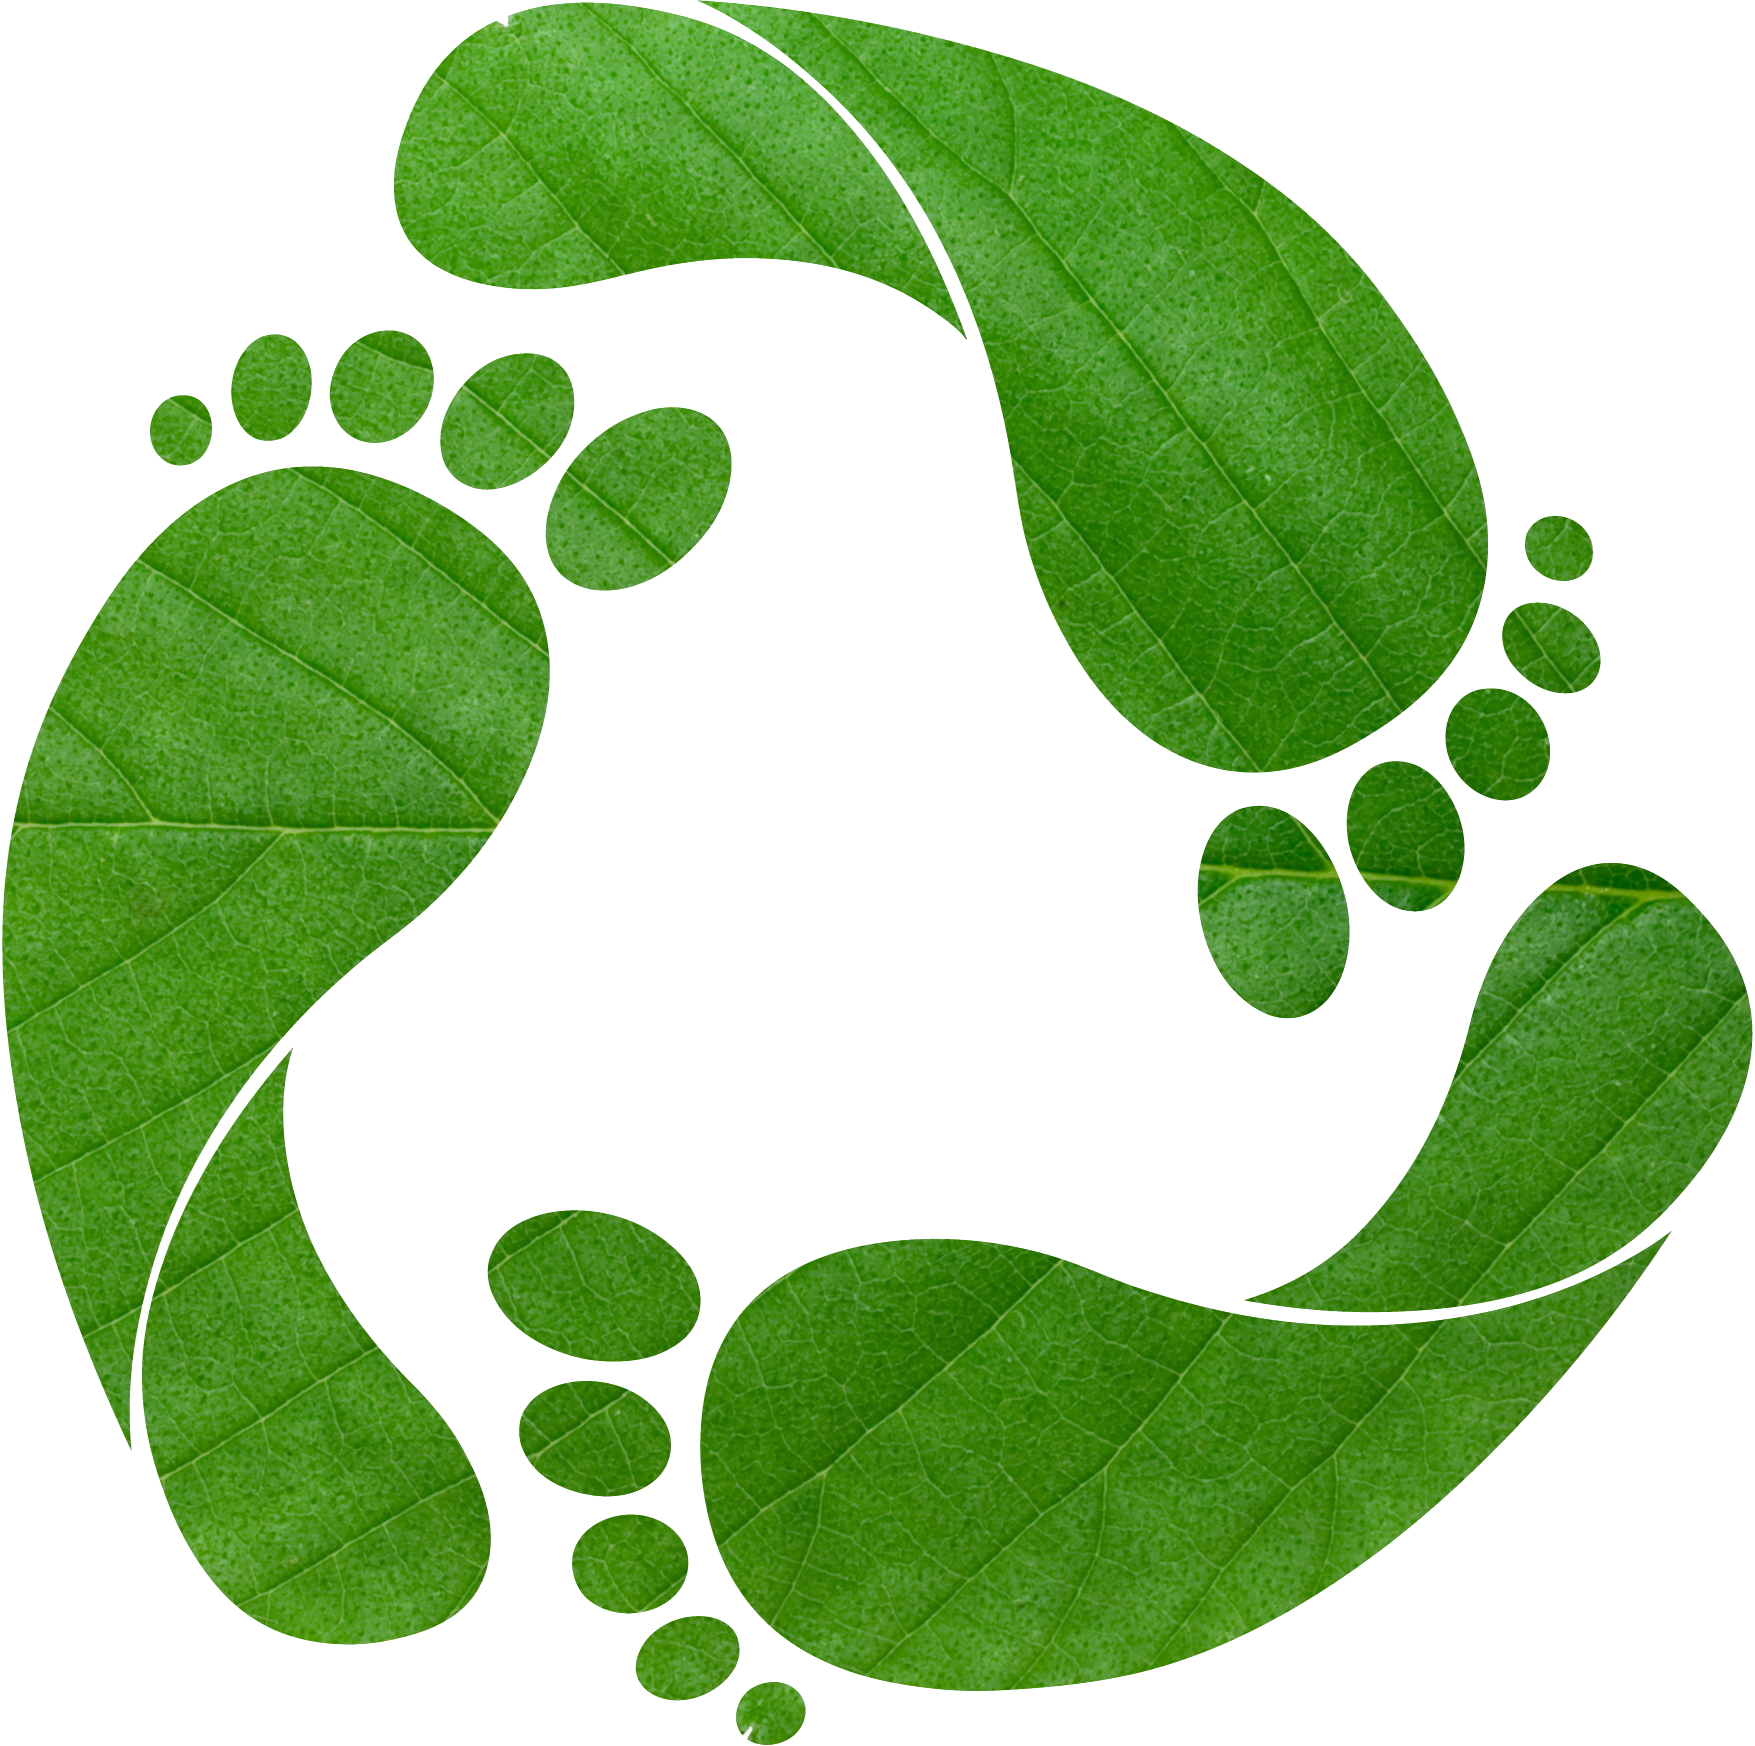 footprint clipart green footprint